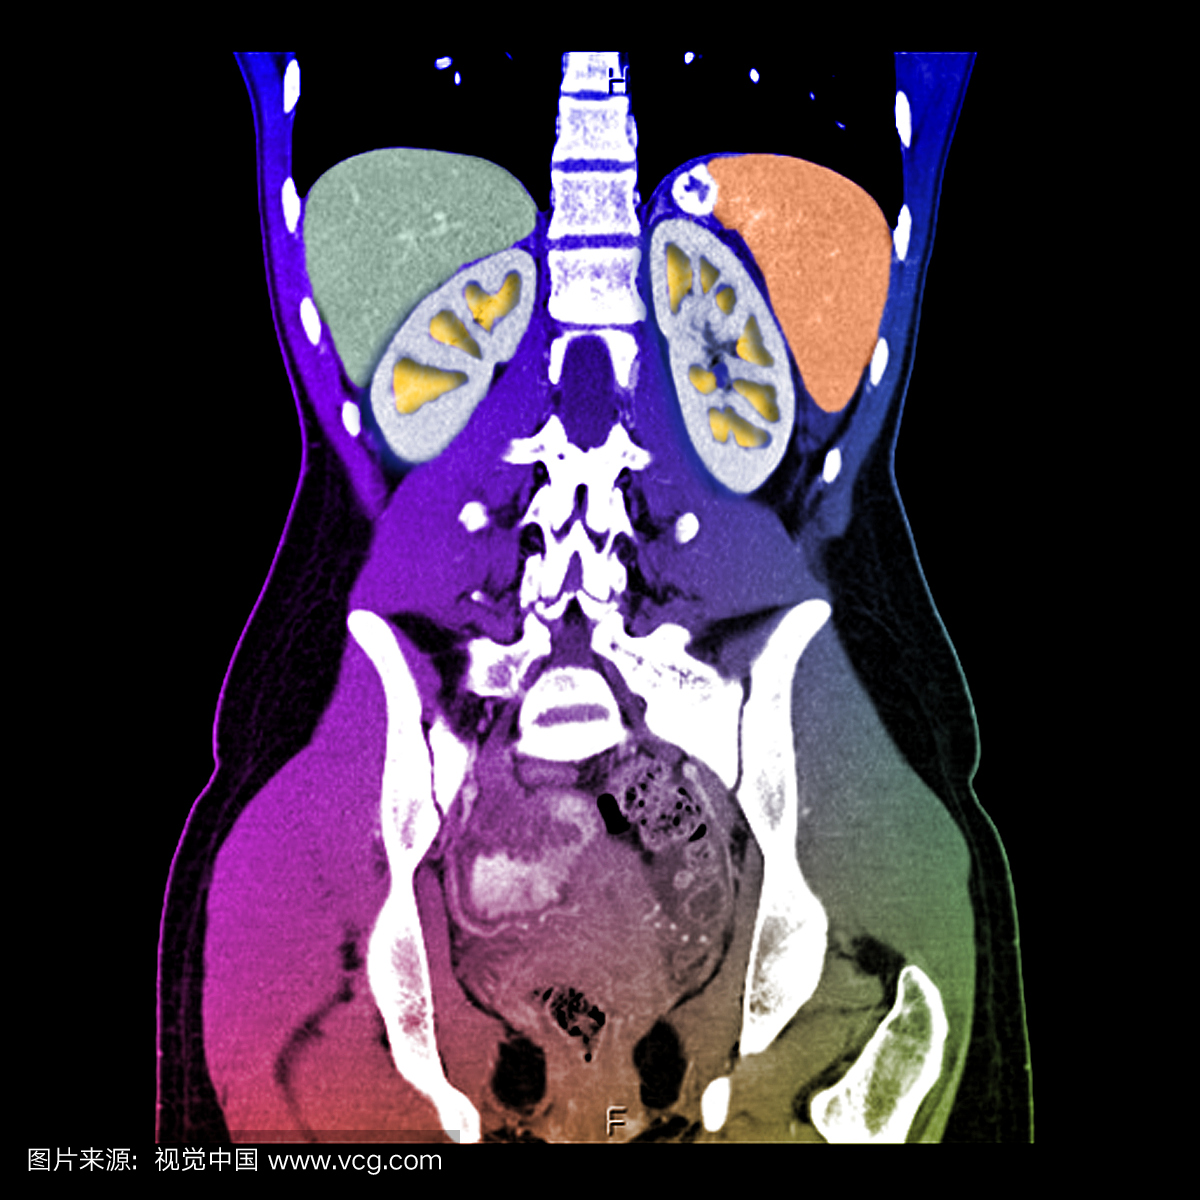 下胸部,腹部和骨盆的这种增强冠状CT扫描显示